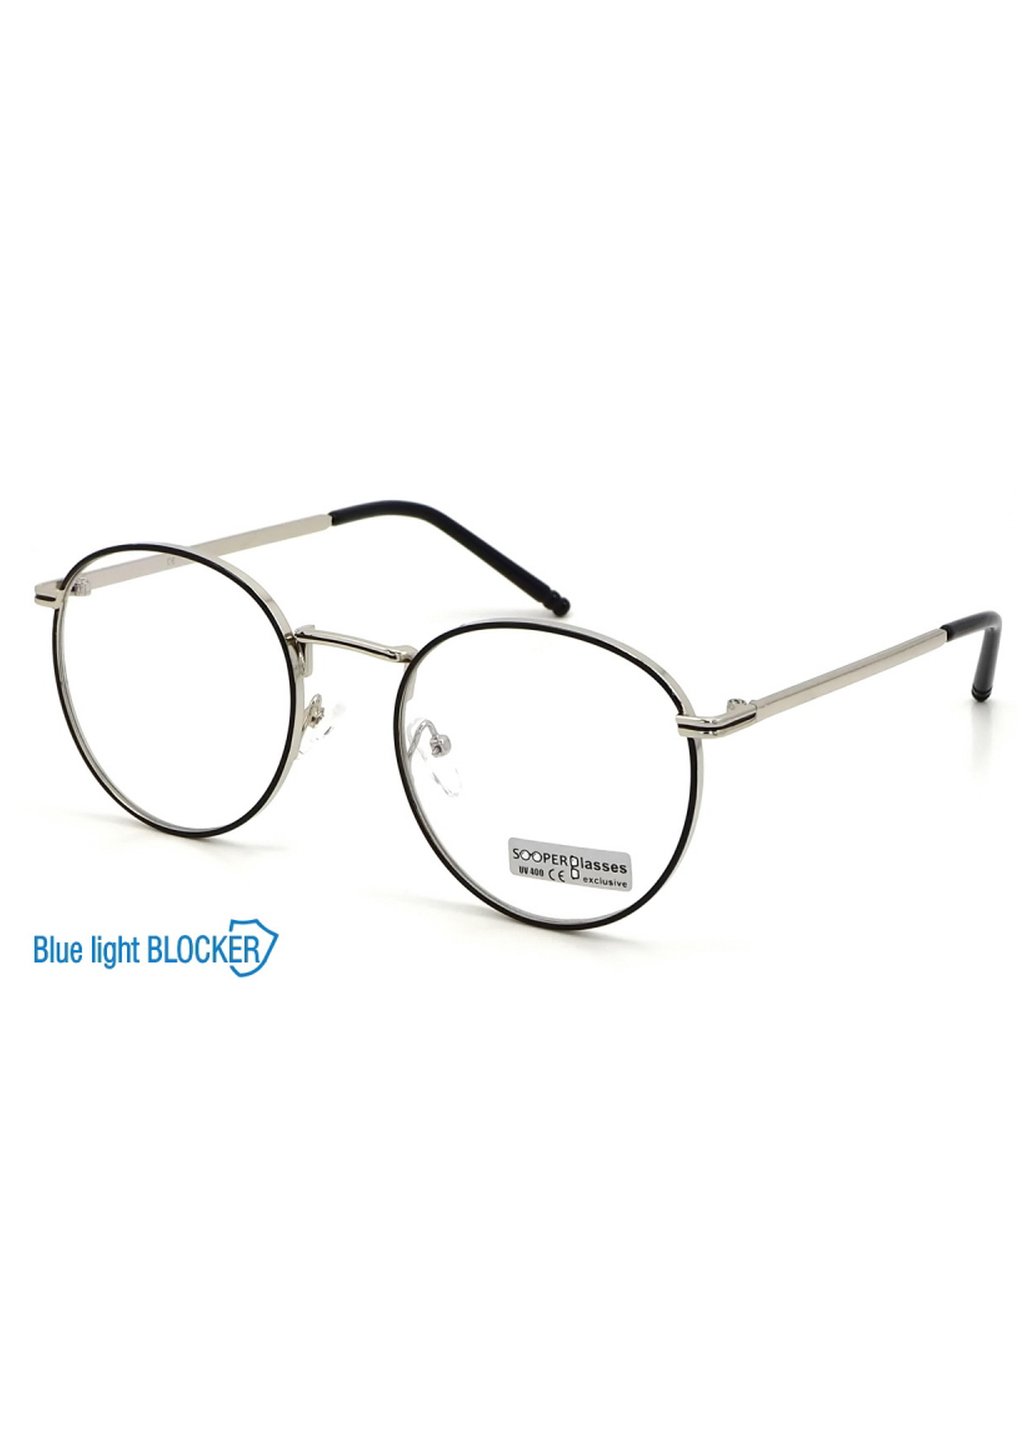 Купить Очки для работы за компьютером Cooper Glasses в серебристой оправе 124004 в интернет-магазине